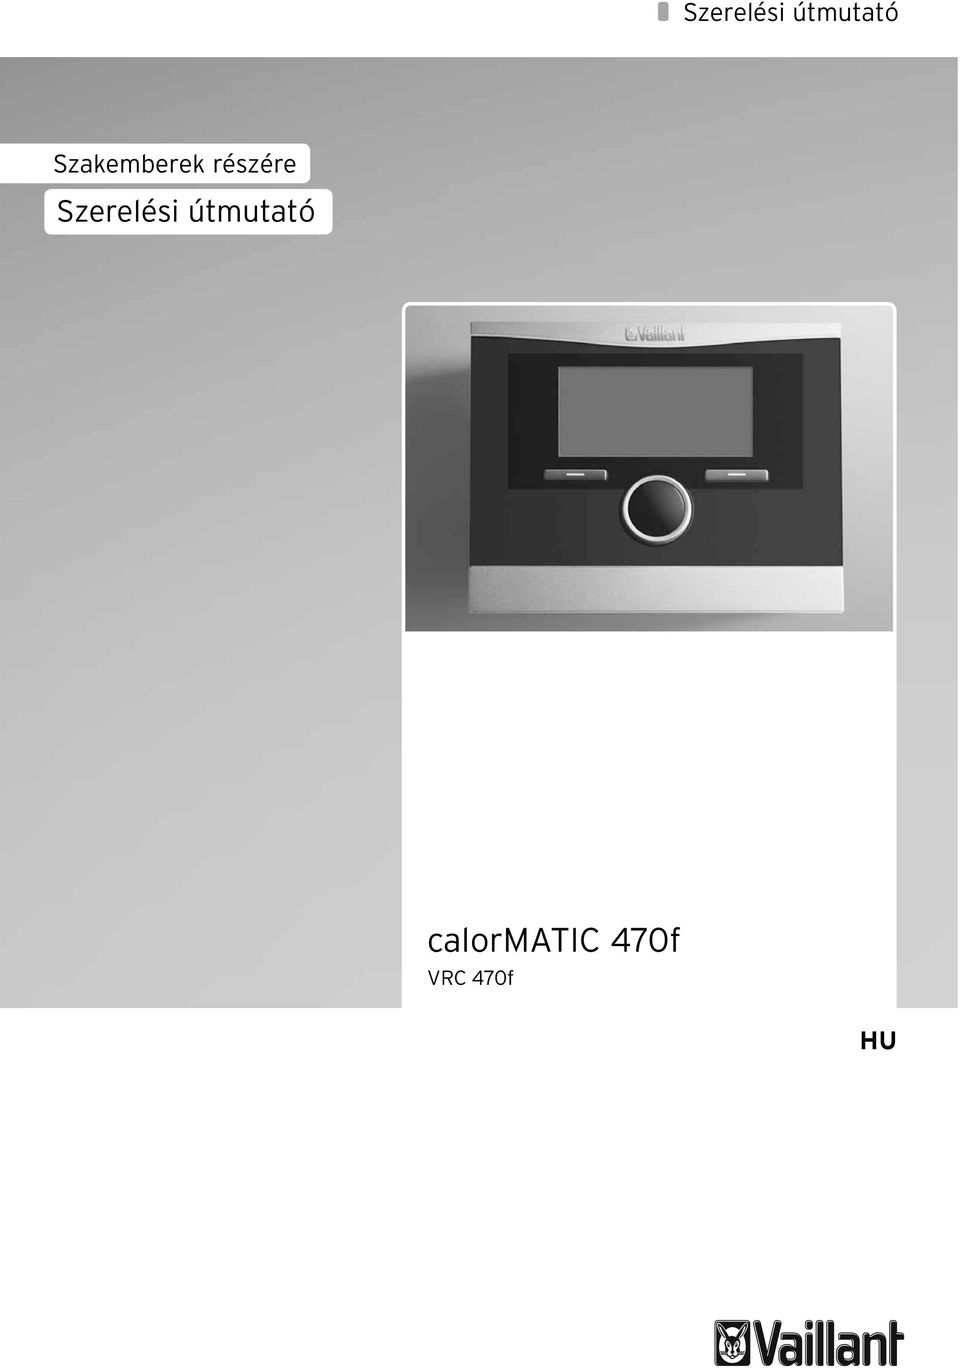 calormatic 470f VRC